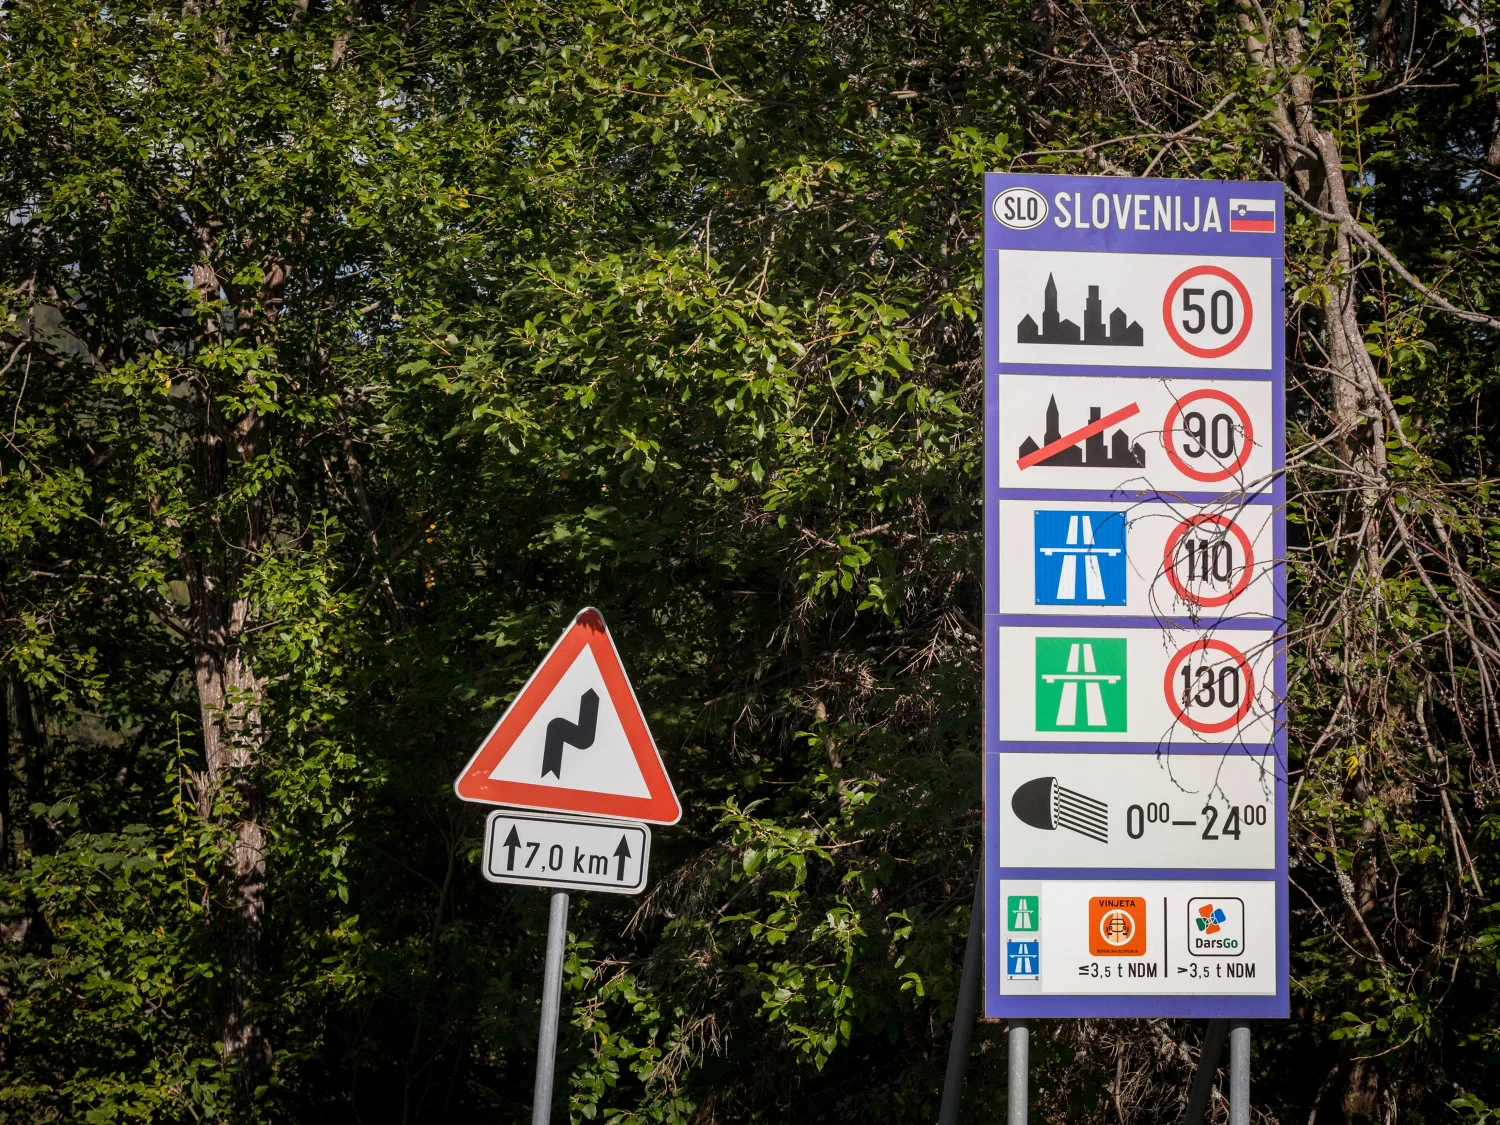 Respectând regulile de circulație rutieră, vă puteți asigura o călătorie în siguranță